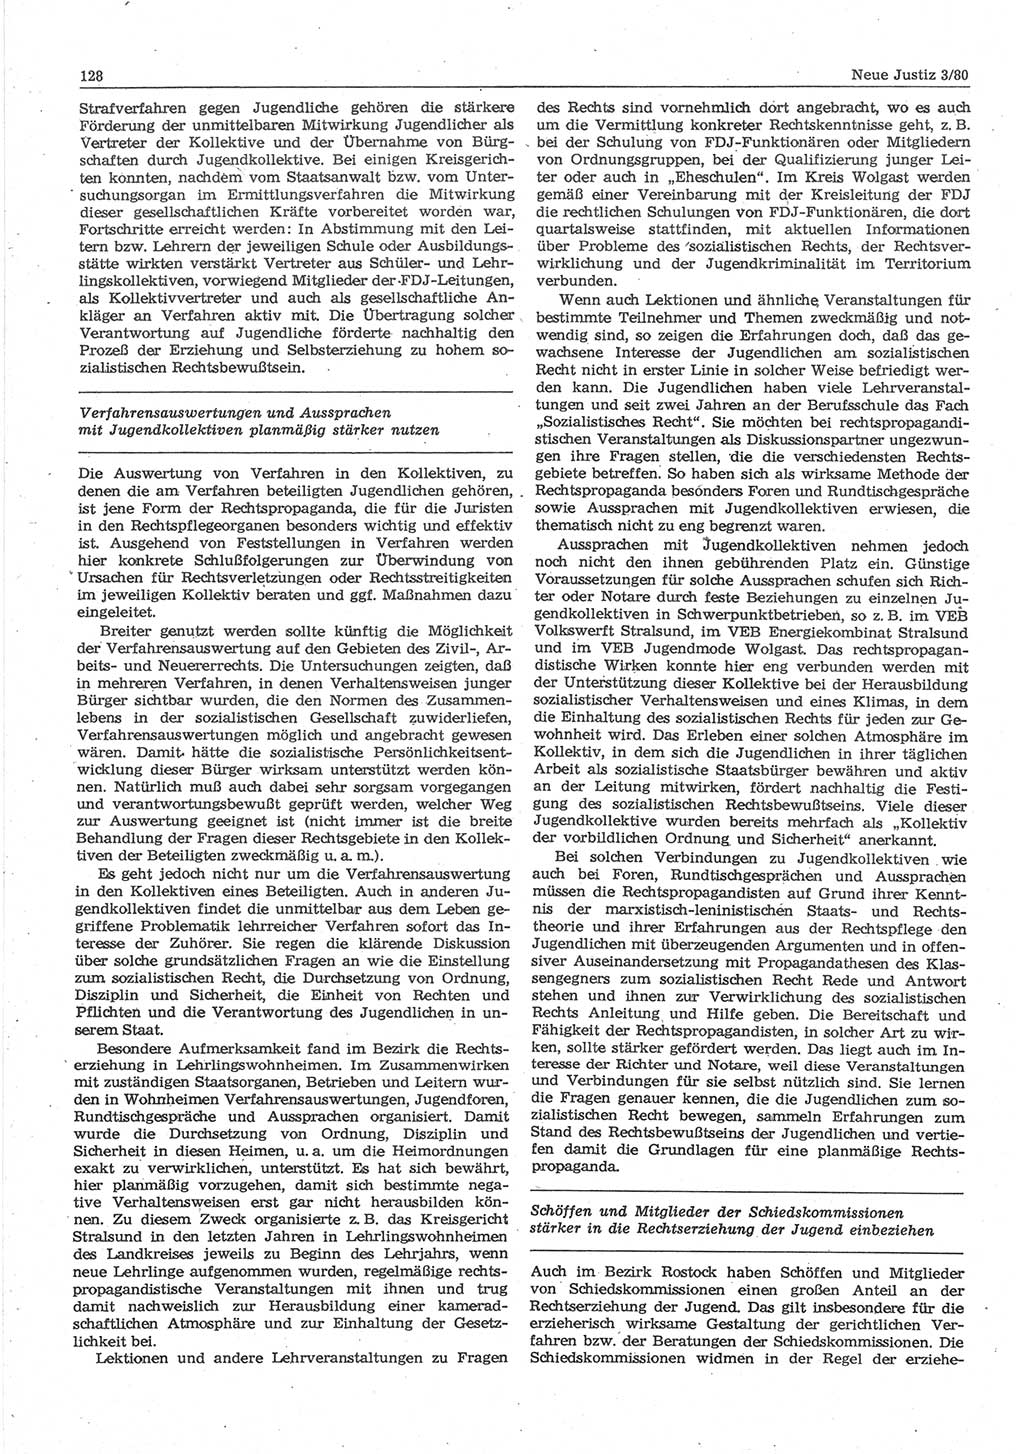 Neue Justiz (NJ), Zeitschrift für sozialistisches Recht und Gesetzlichkeit [Deutsche Demokratische Republik (DDR)], 34. Jahrgang 1980, Seite 128 (NJ DDR 1980, S. 128)